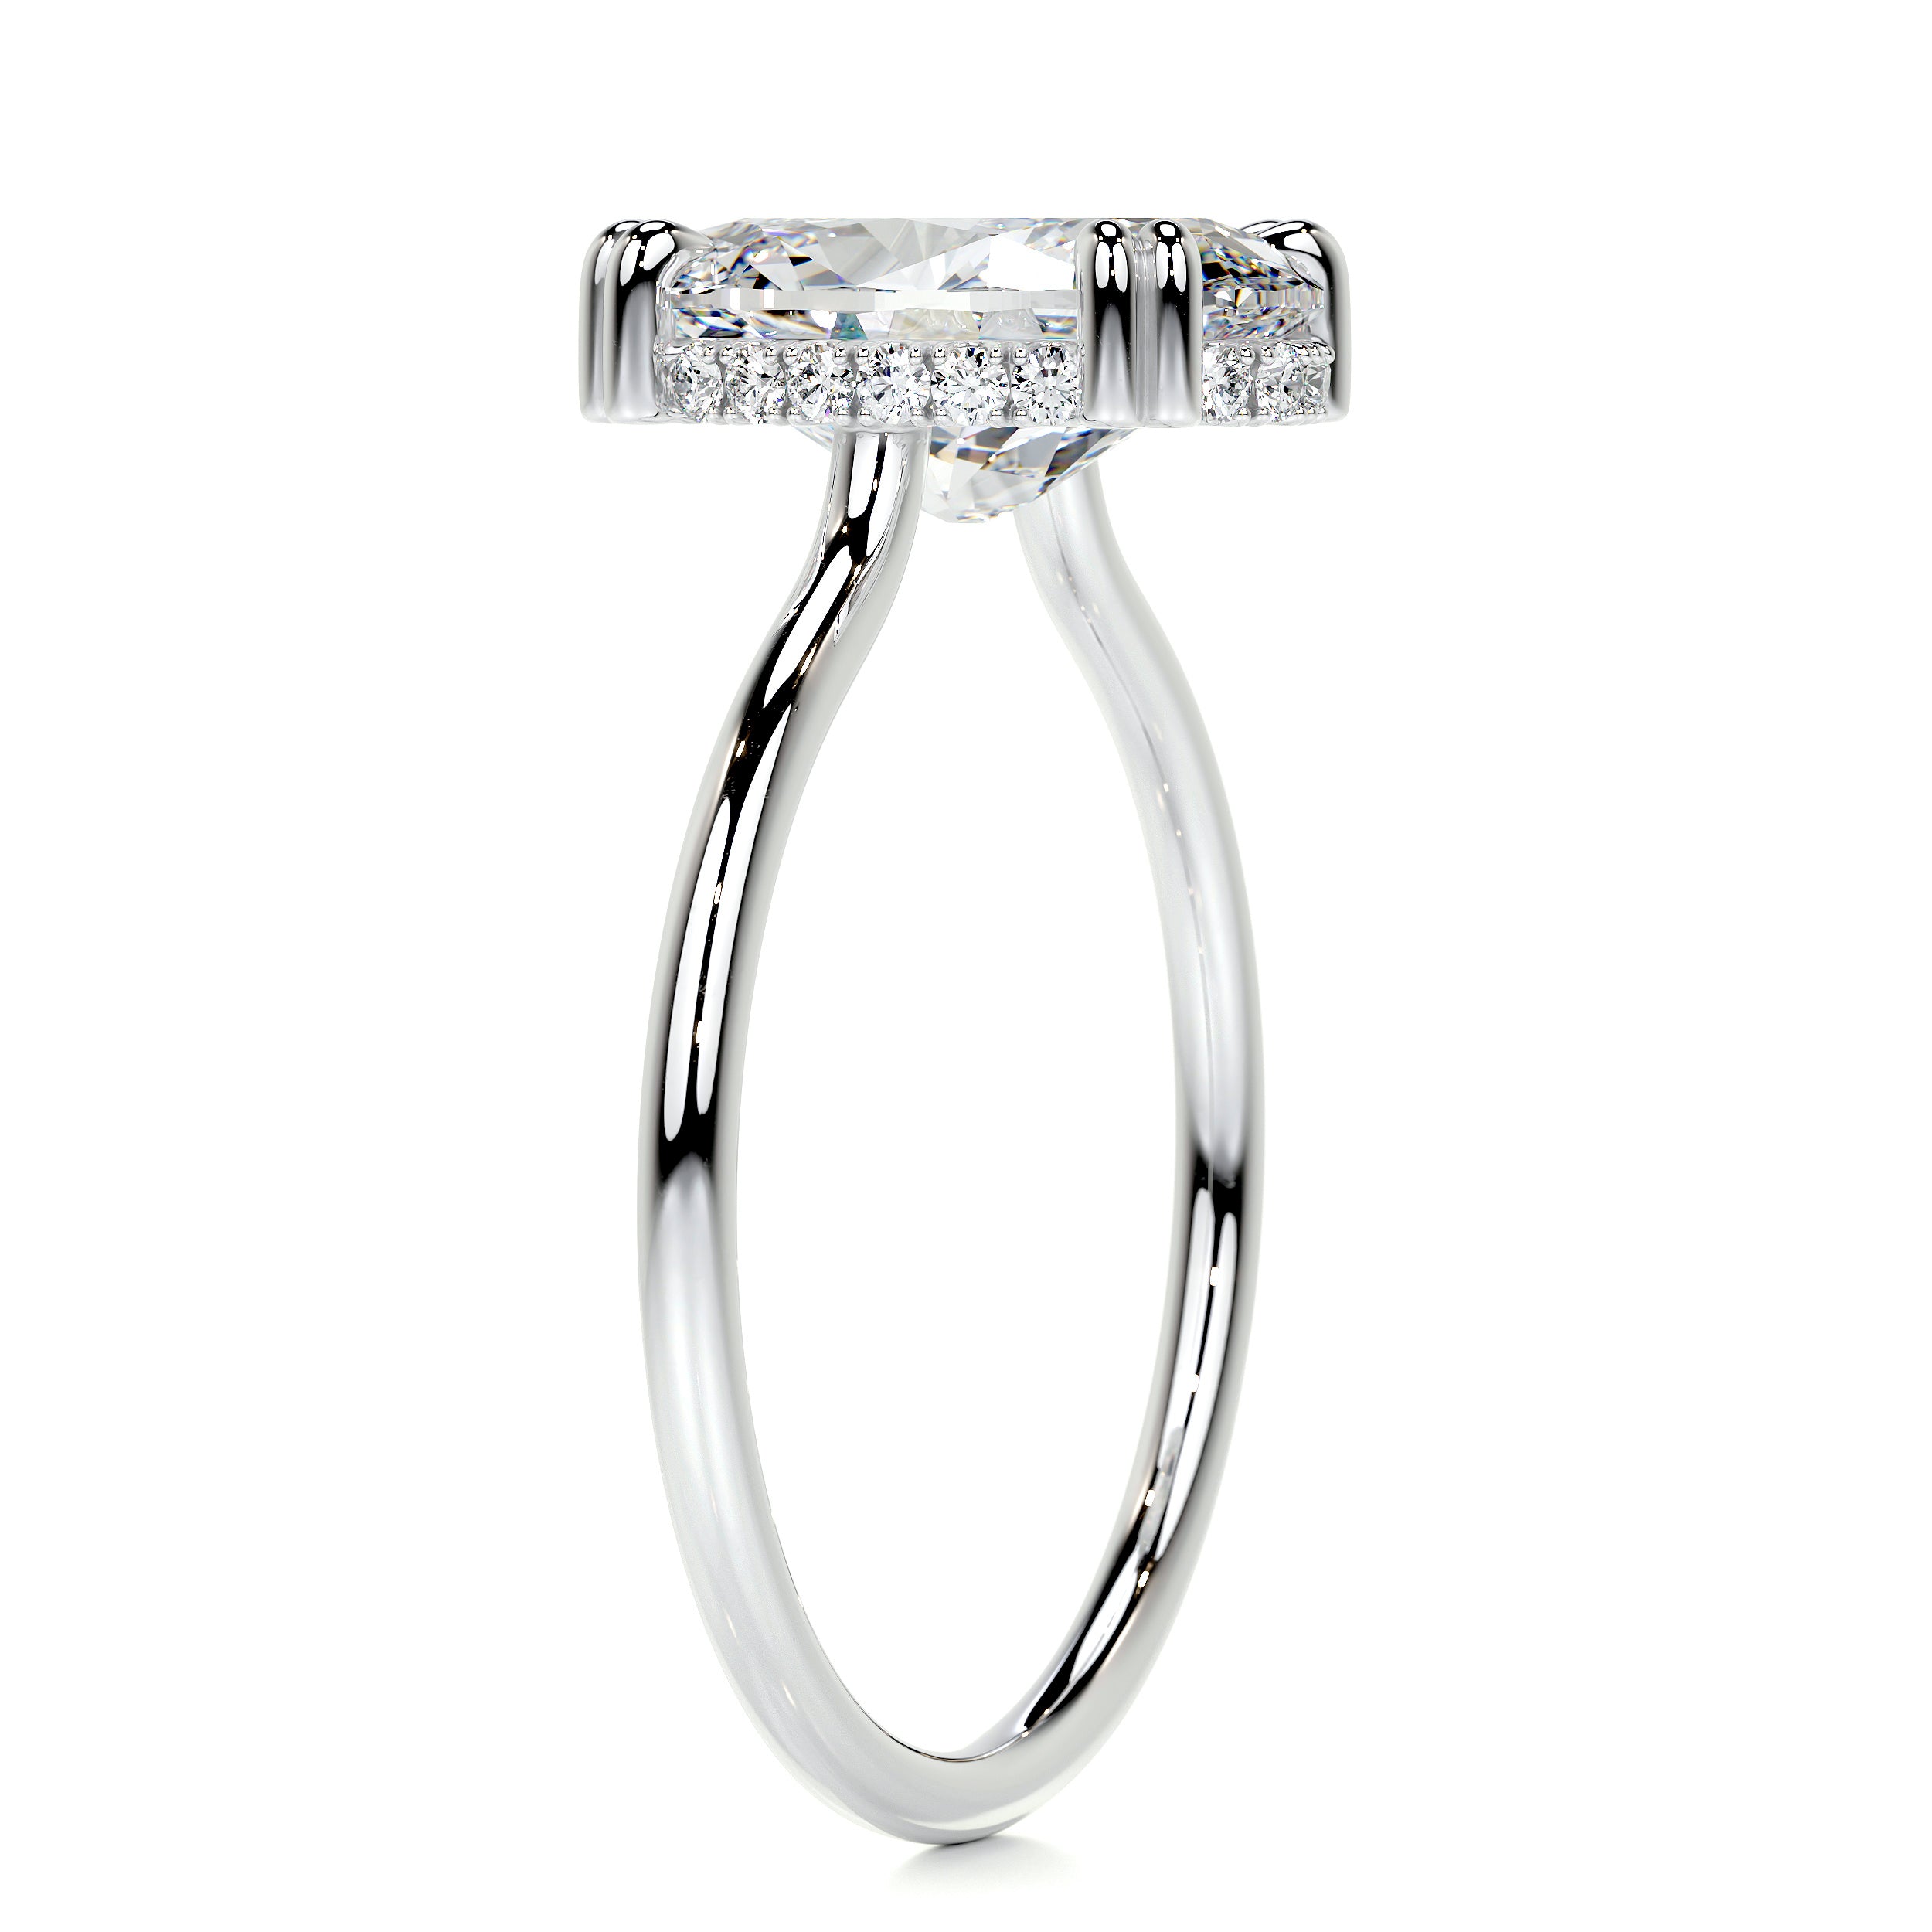 Harriet Diamond Engagement Ring   (3.1 Carat) -Platinum